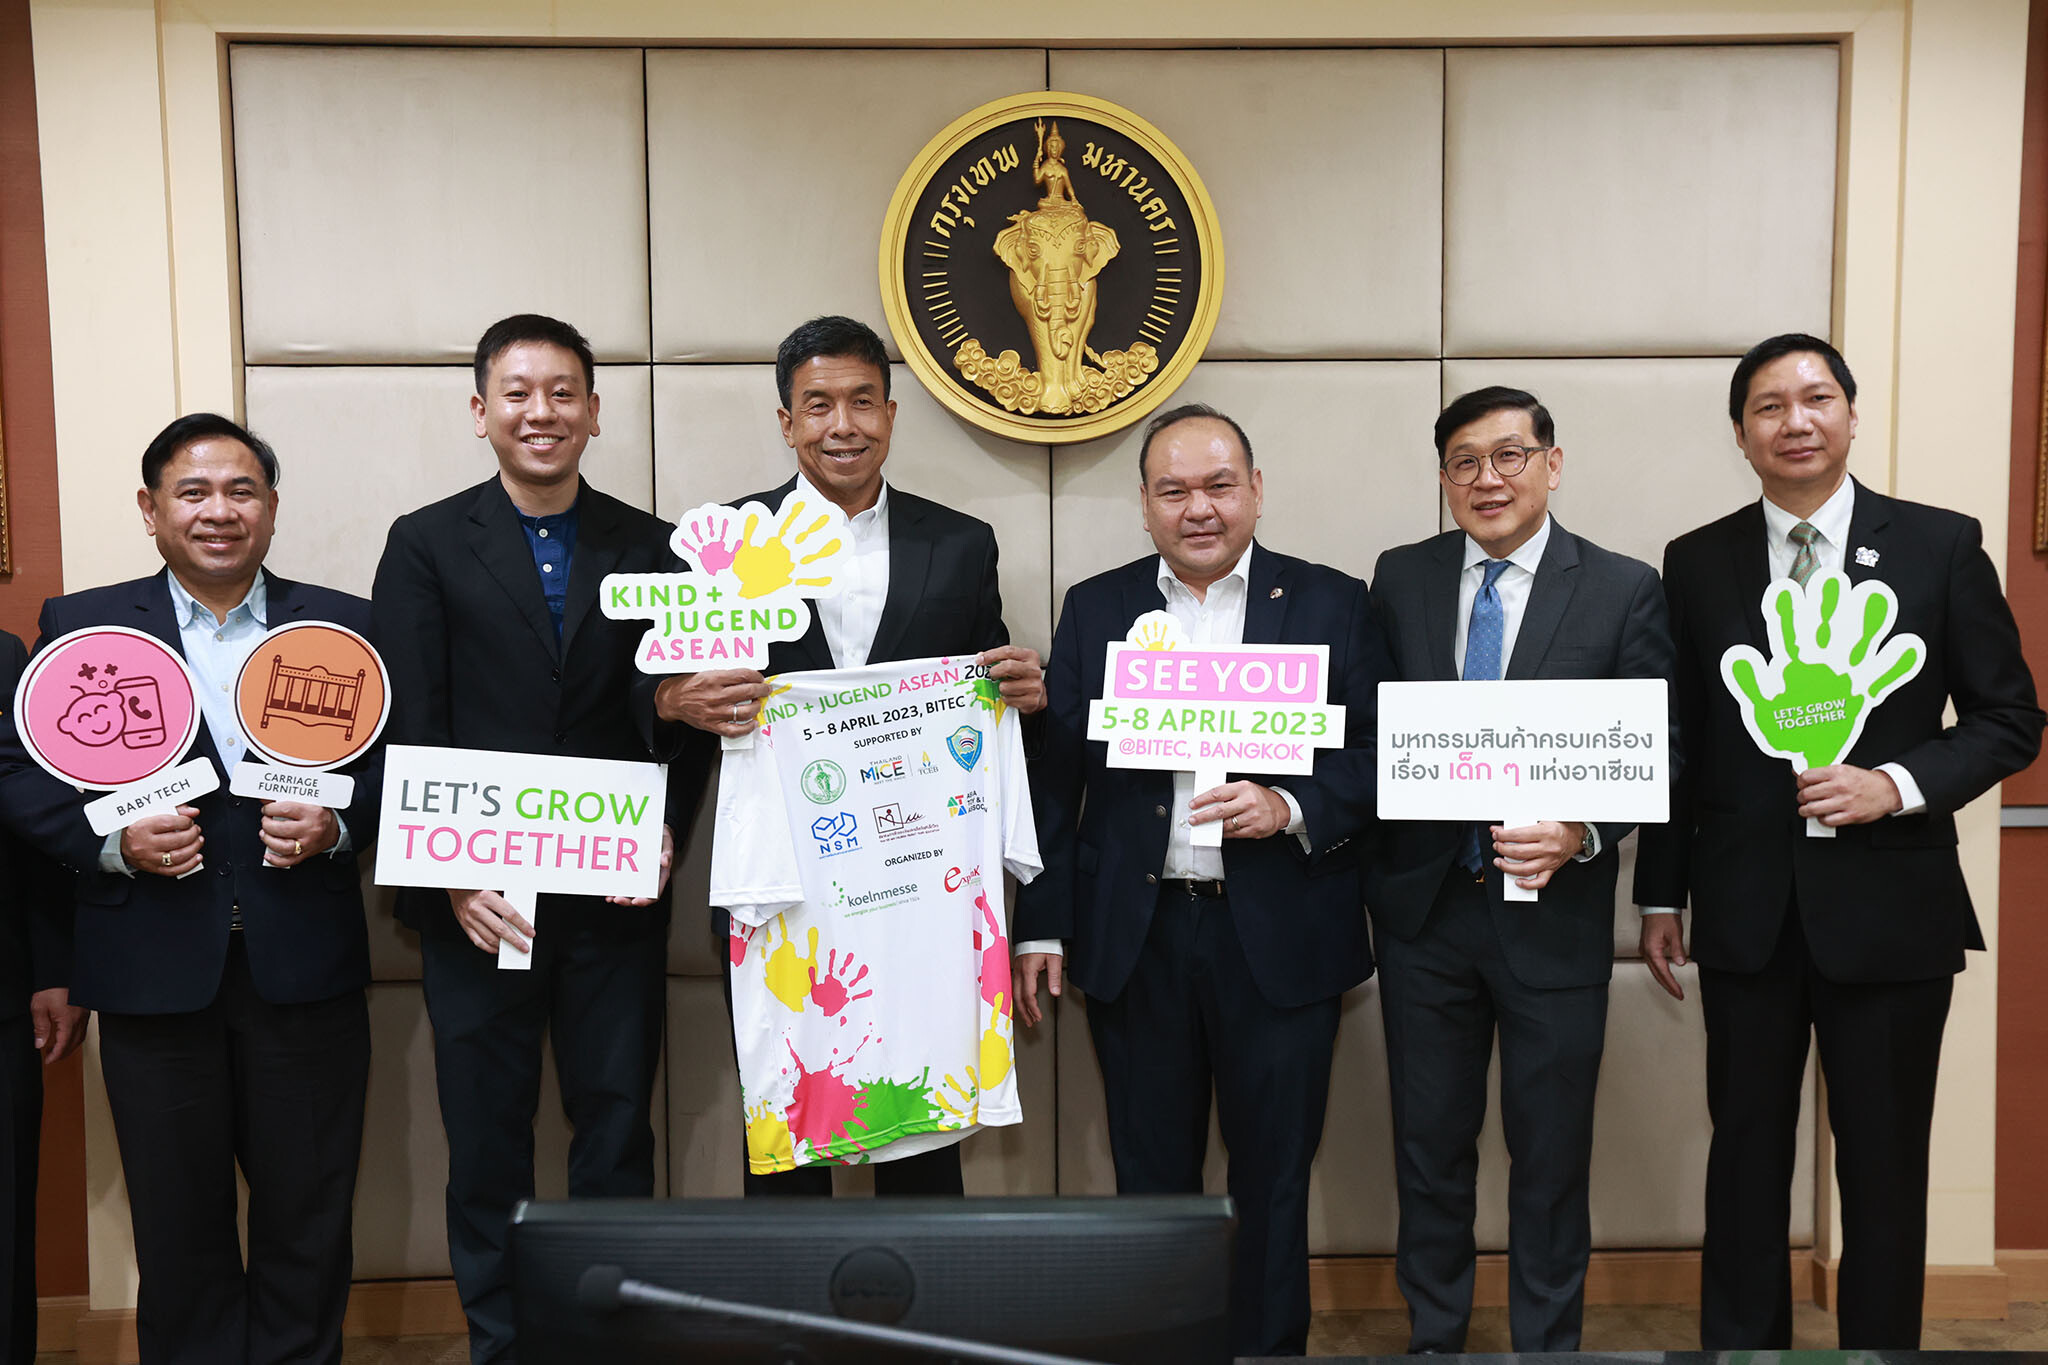 กรุงเทพมหานคร เตรียมจับมือเอกชน เดินหน้าจัดงาน Kind + Jugend ASEAN 2023